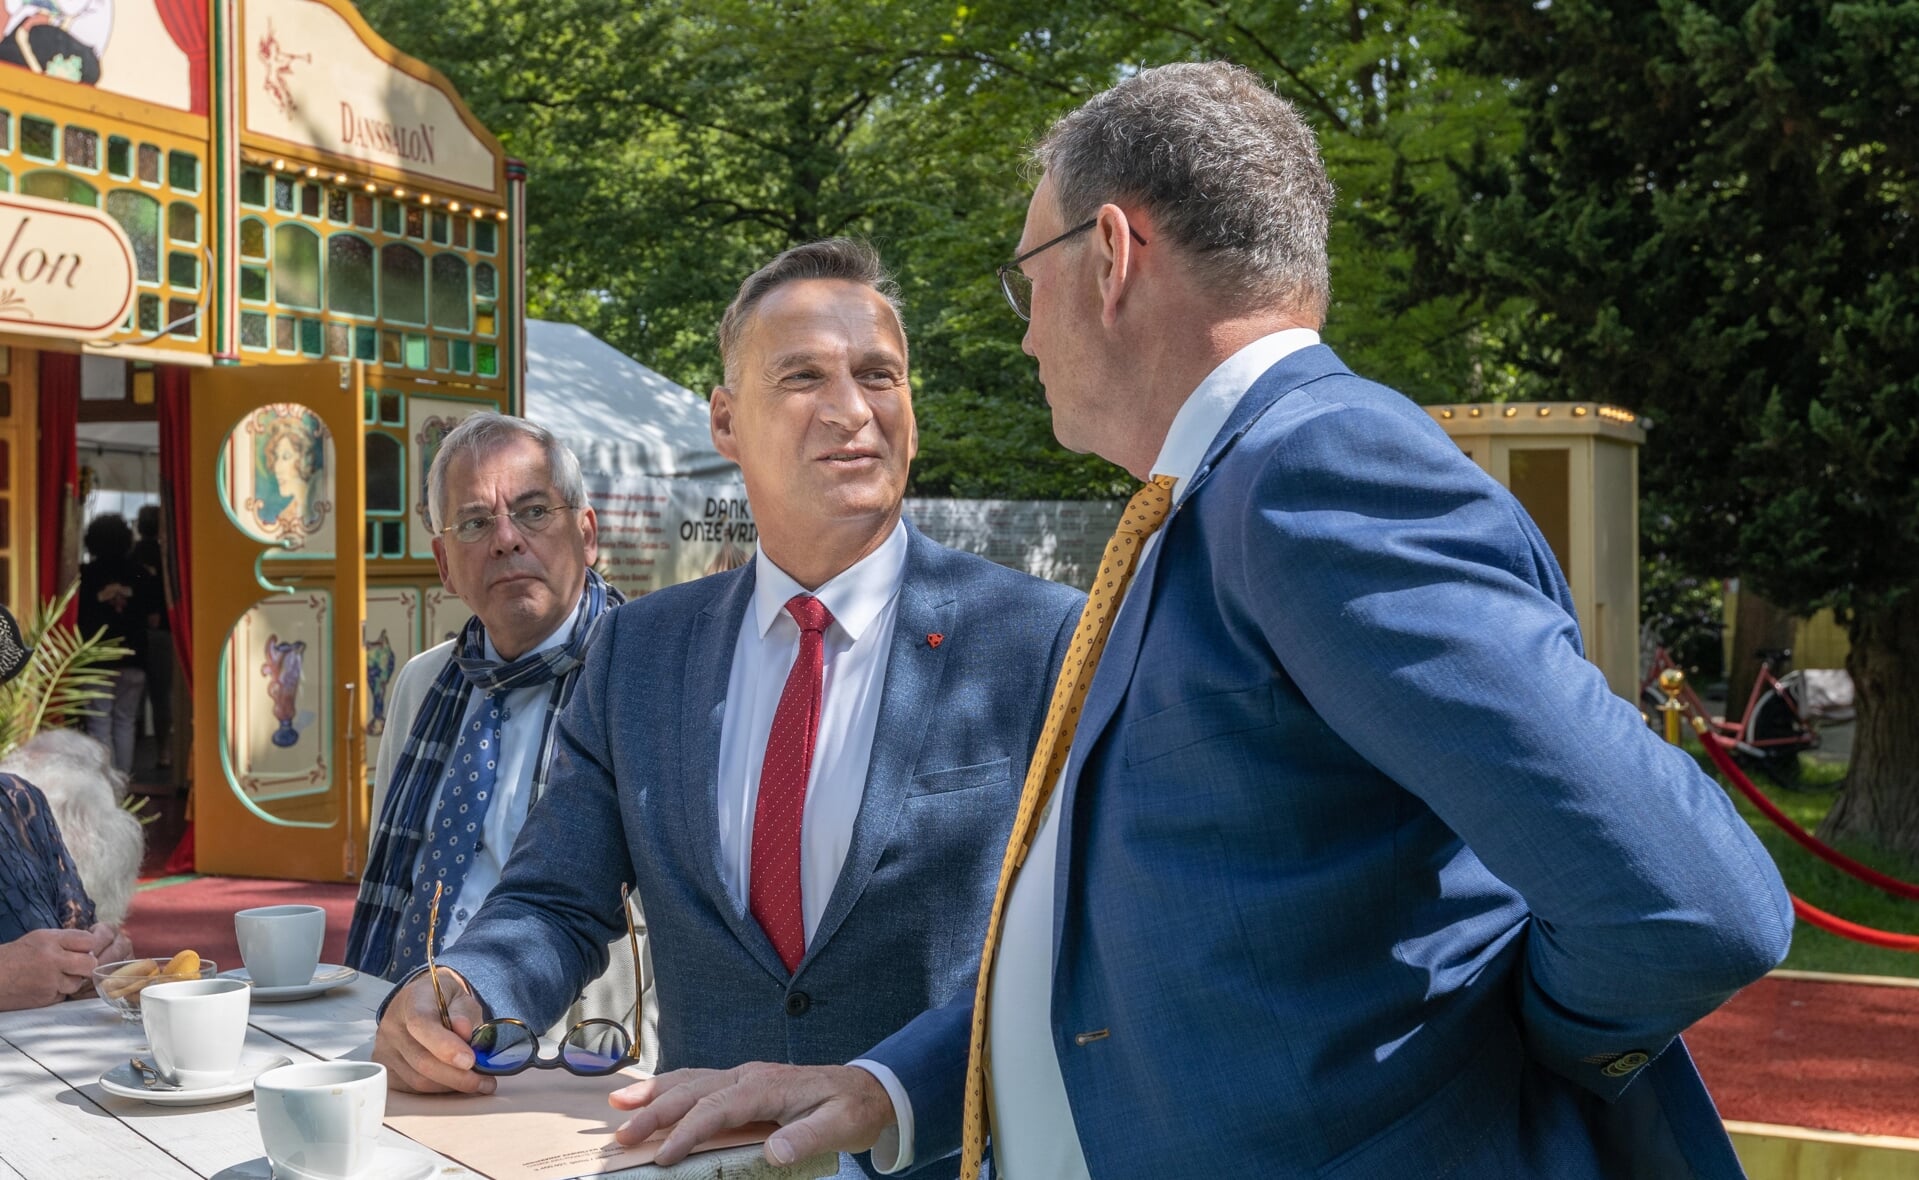 Burgemeester Joachim Rodenkirch van Wittlich (midden) in gesprek met zijn Boxtelse ambtsgenoot Ronald van Meygaarden. Links Arjen Witteveen, kartrekker van het Boxtelse jumelagecomité.